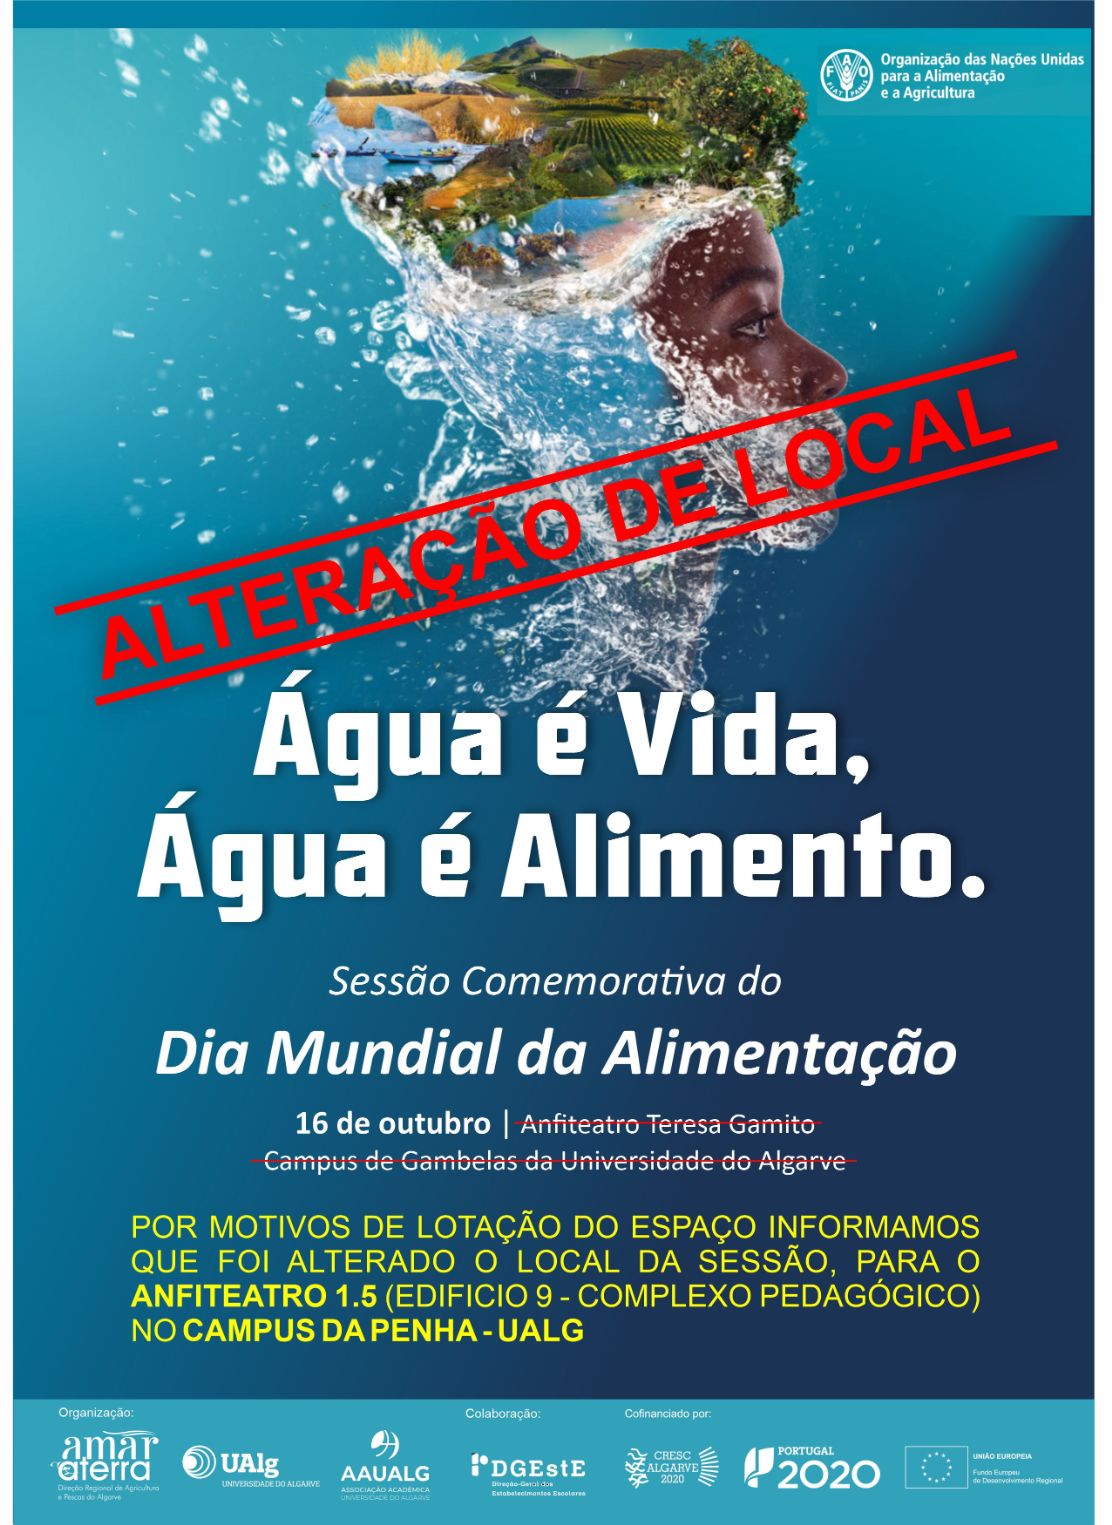 DRAP Algarve organiza Sessão comemorativa do Dia Mundial da Alimentação: “Água é vida, Água é Alimento.”